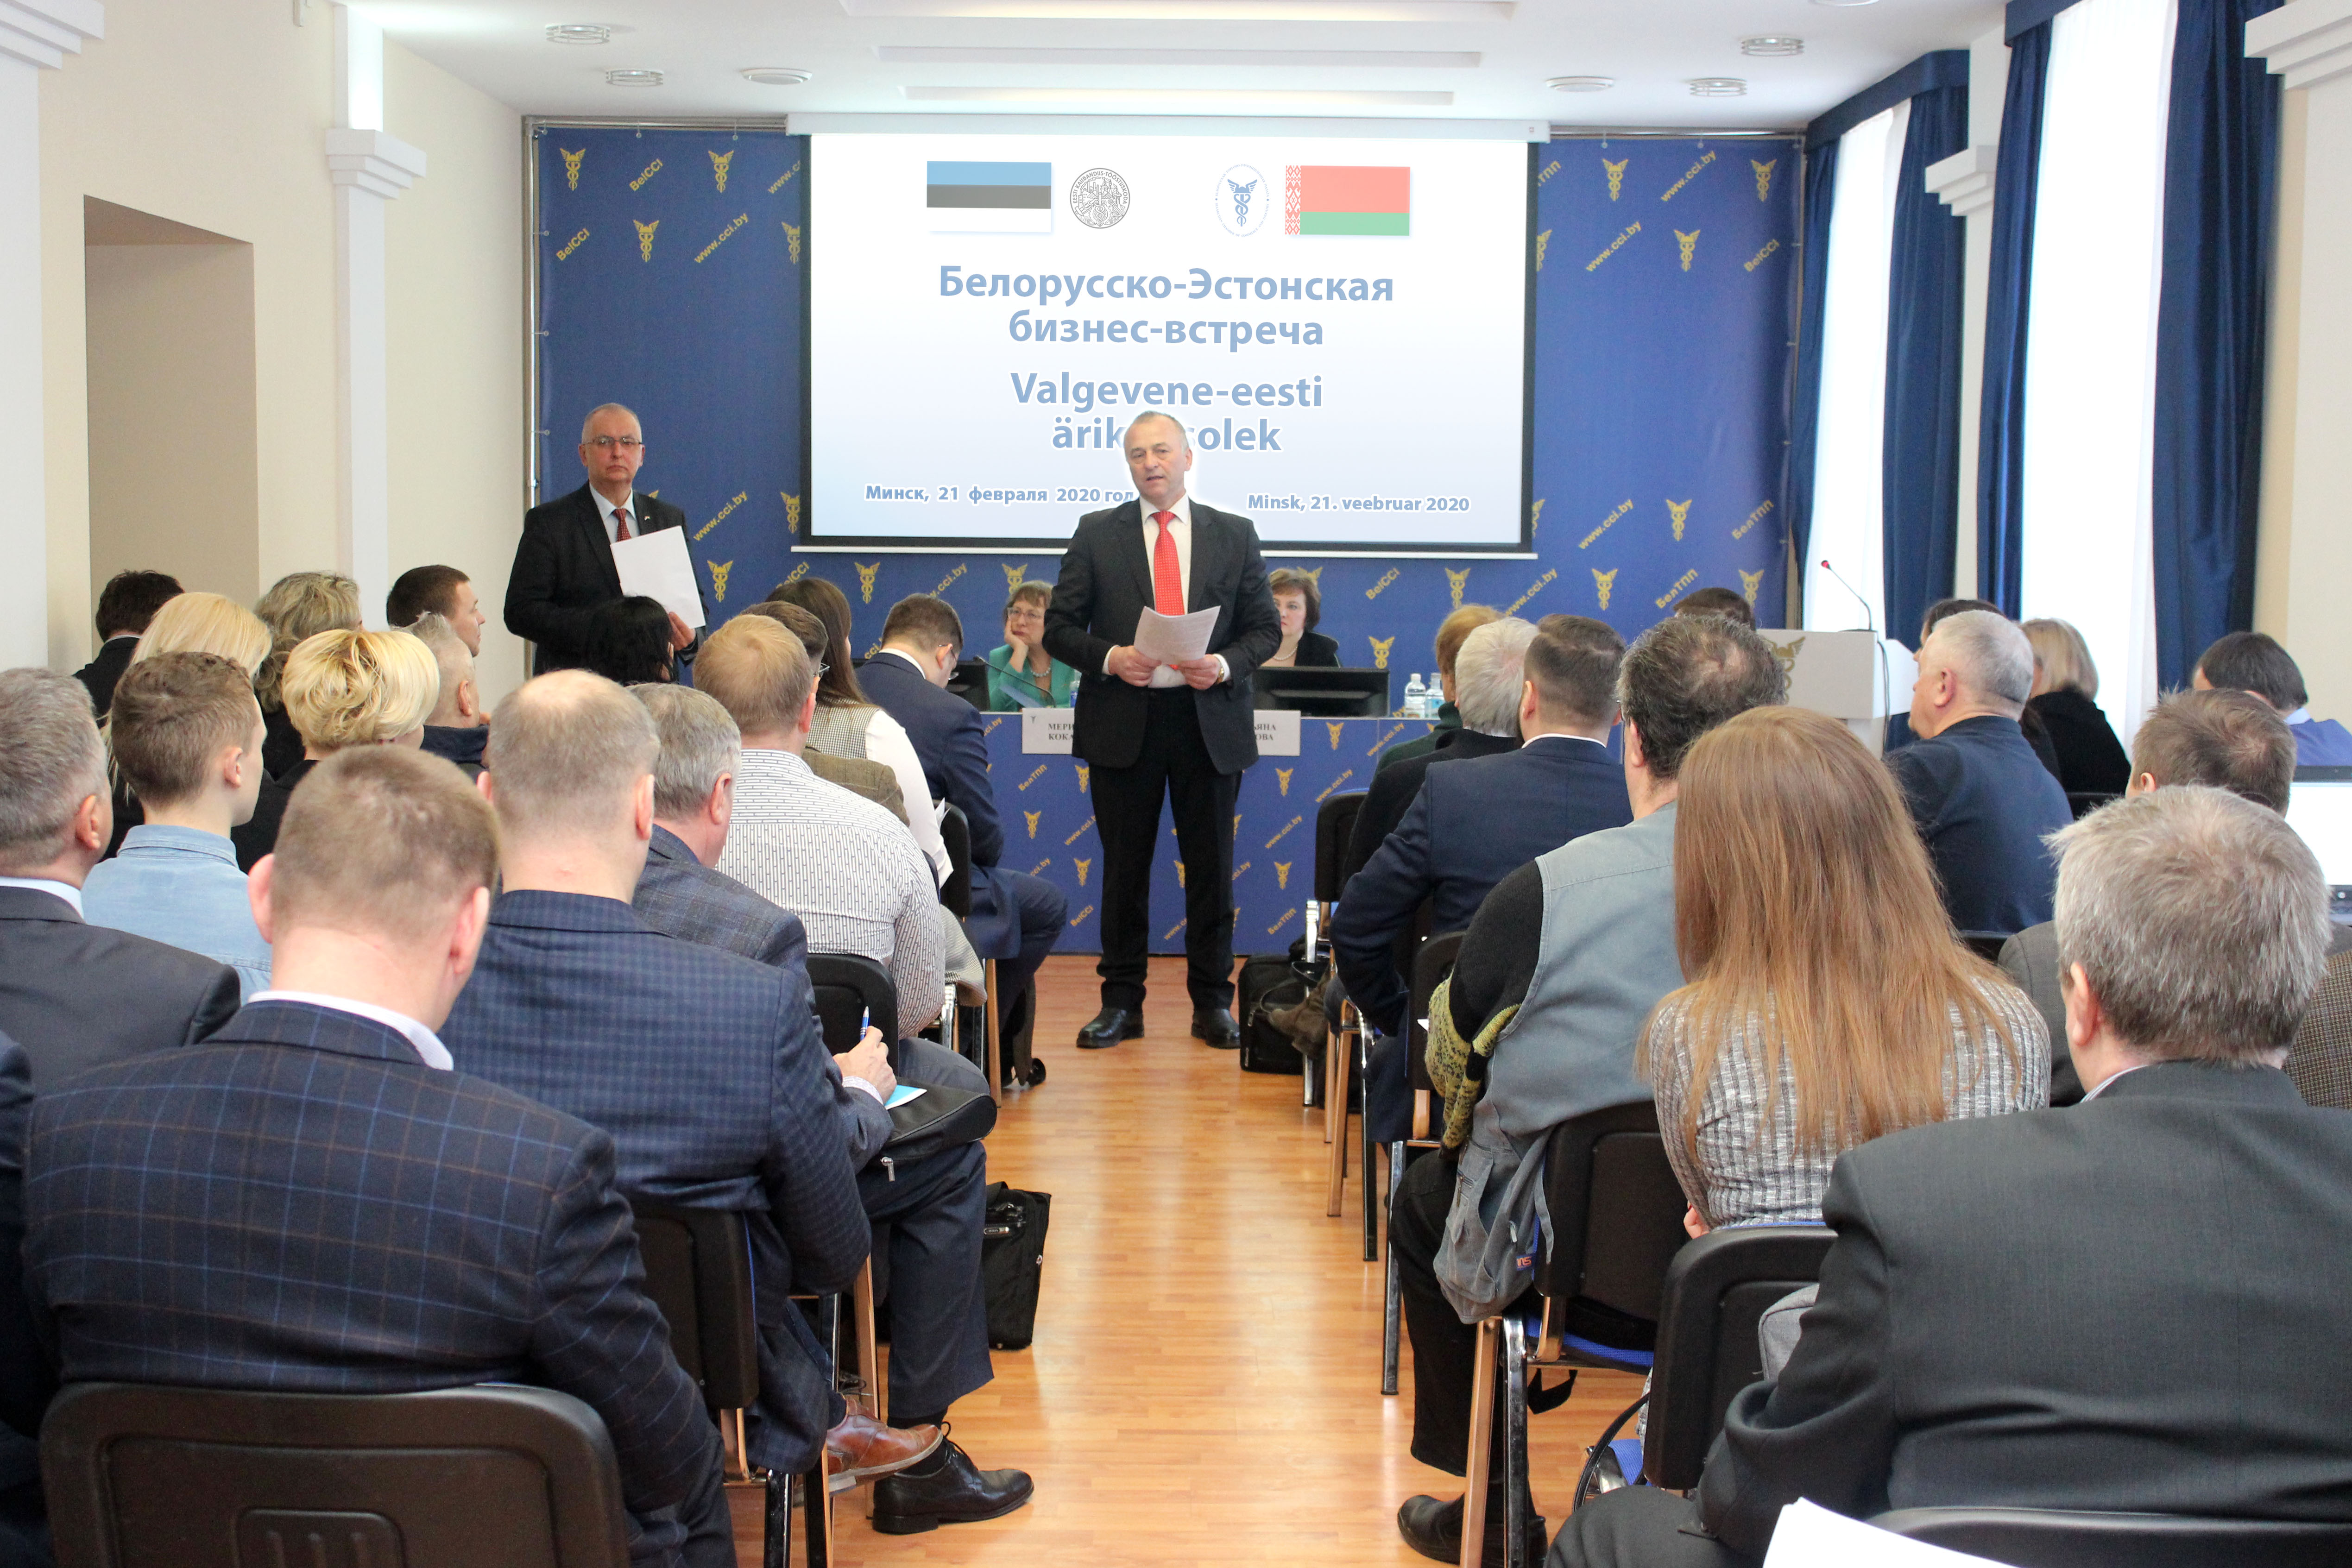 Белорусско-Эстонская бизнес-встреча